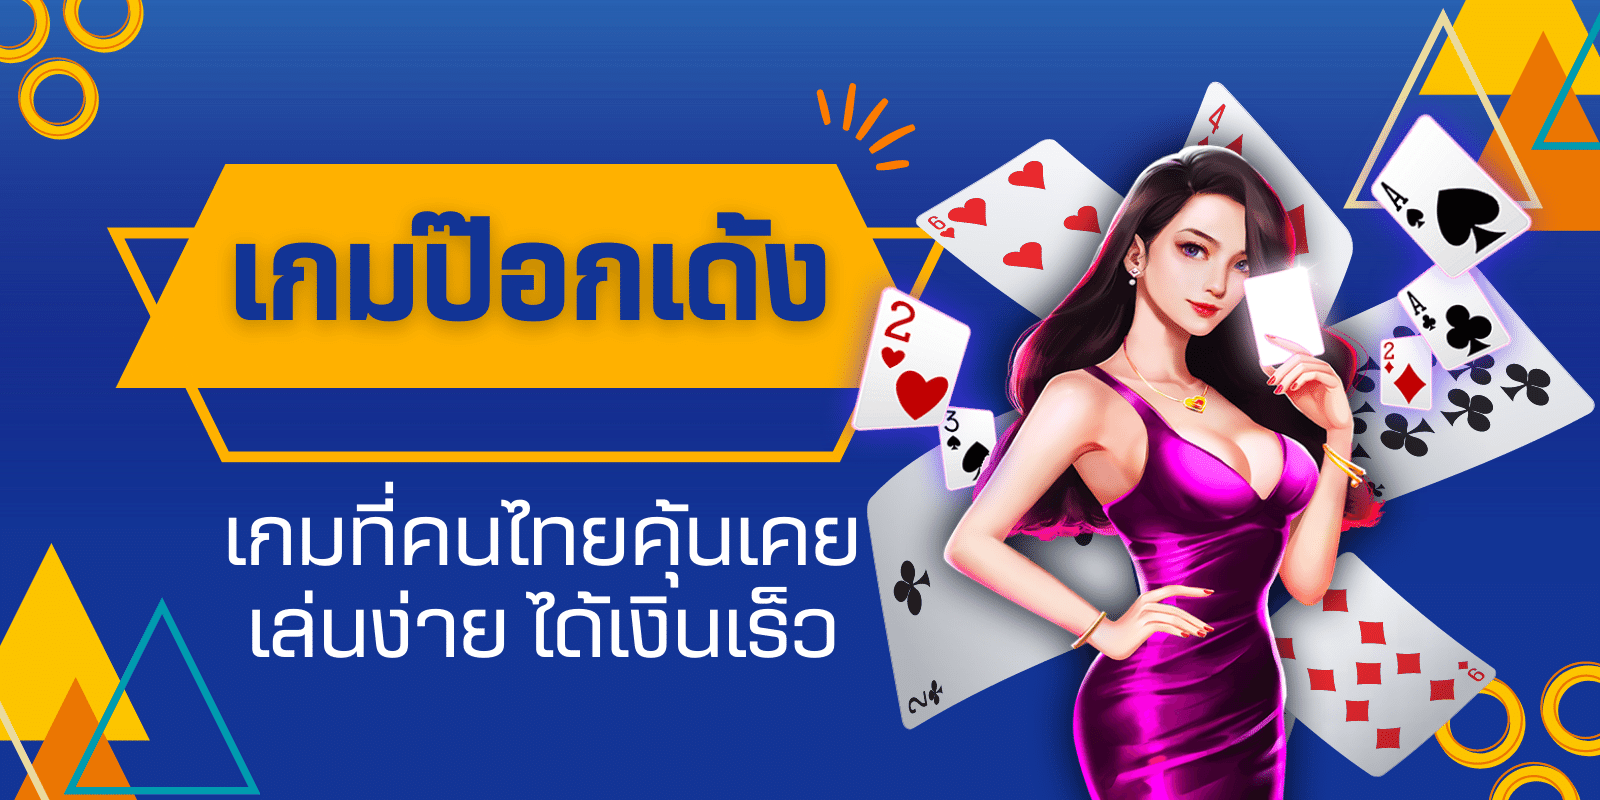 เกมป๊อกเด้ง เกมที่คนไทยคุ้นเคย เล่นง่าย ได้เงินเร็ว